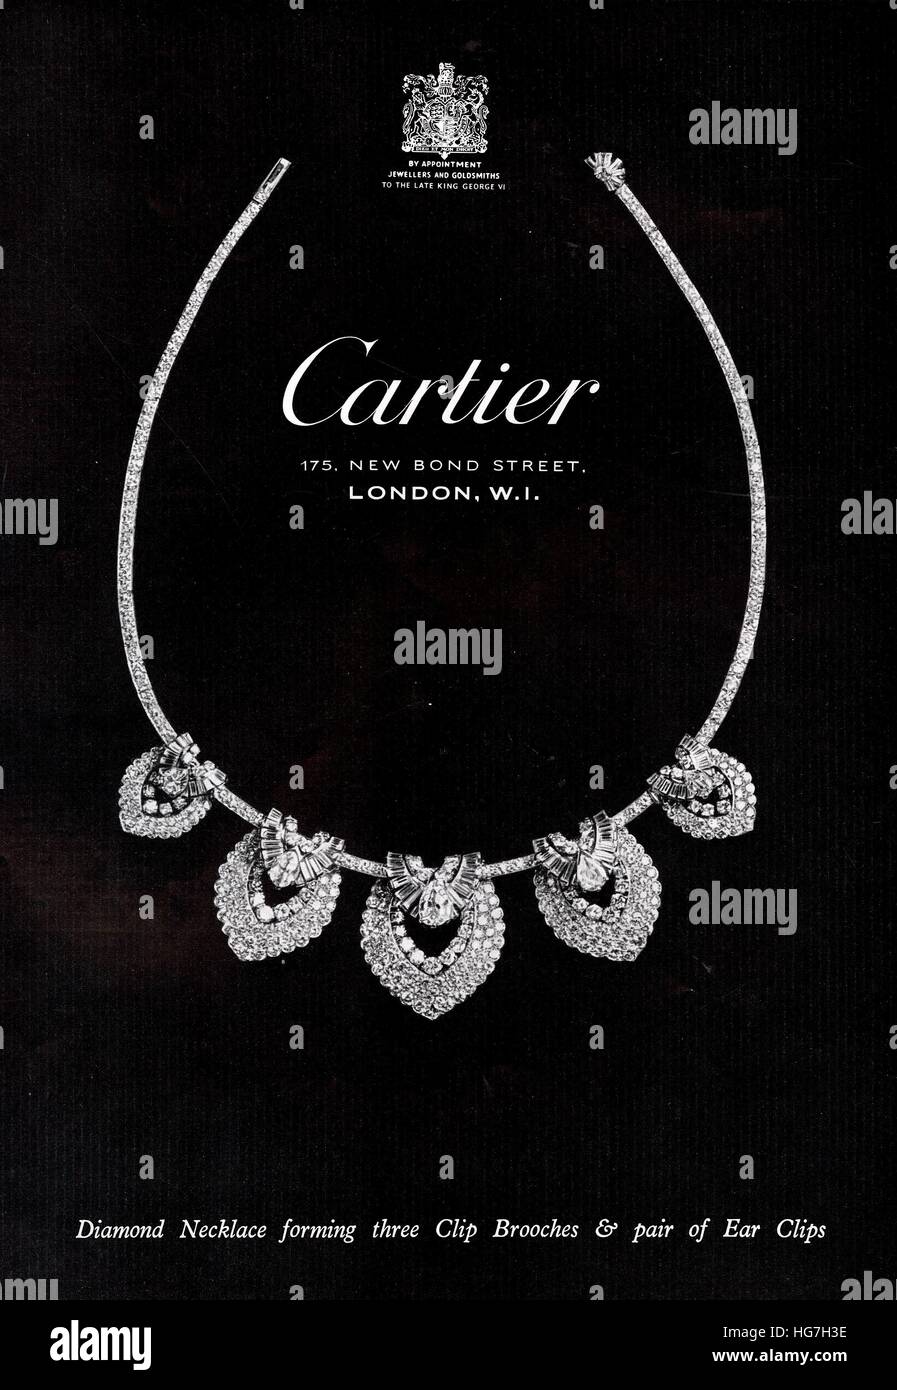 1950s cartier necklace